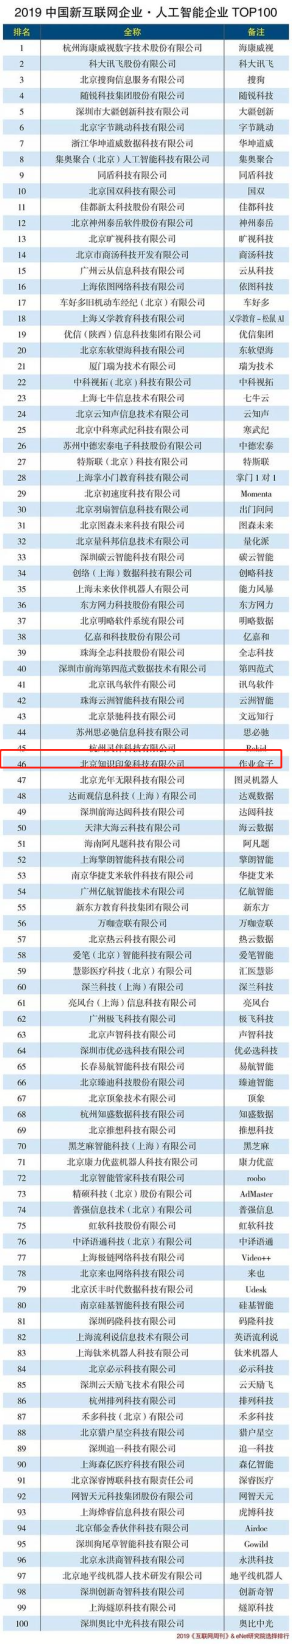 作业盒子入选“2019中国新互联网企业·人工智能企业TOP100”